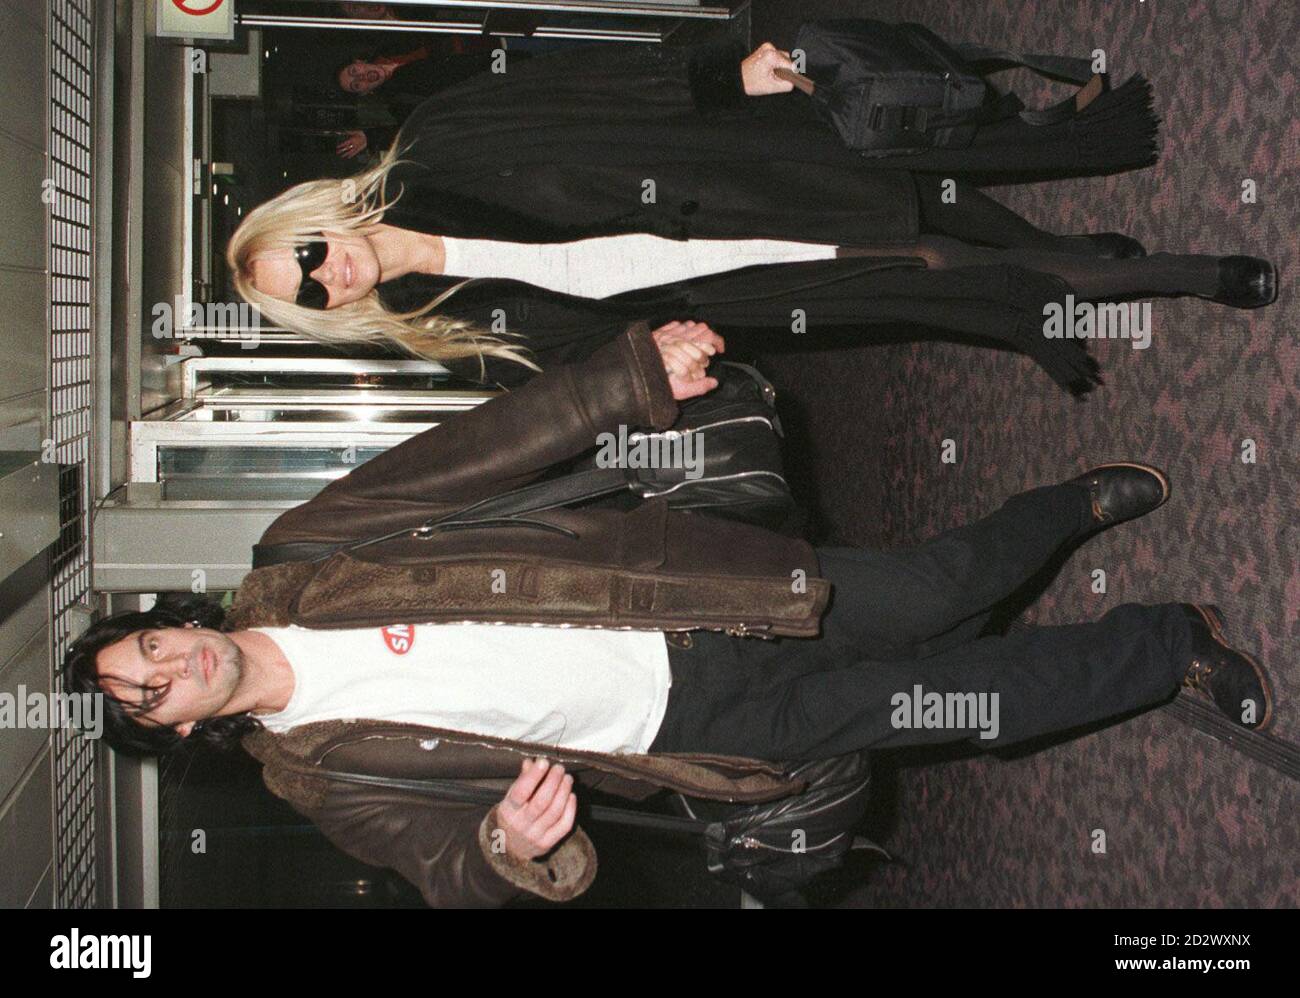 Pamela Anderson, la star de « Baywatch », avec son mari Tommy Lee à l'aéroport d'Heathrow, avant de partir pour Los Angeles aujourd'hui (mardi), après avoir passé Noël et le nouvel an en Europe. Banque D'Images